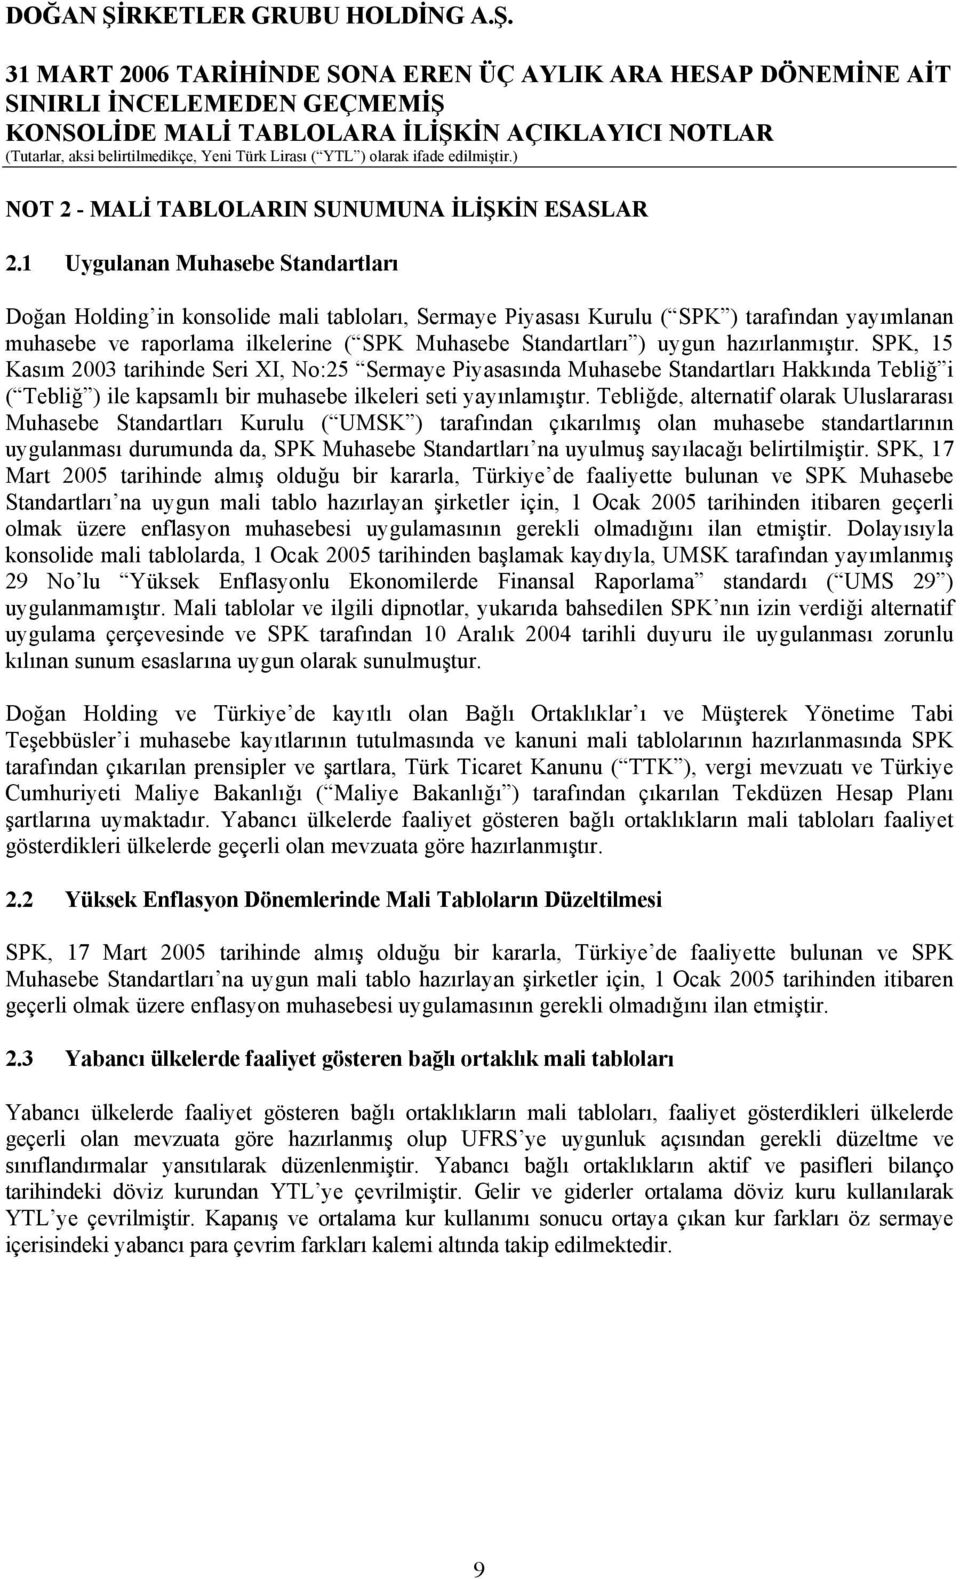 hazırlanmıştır. SPK, 15 Kasım 2003 tarihinde Seri XI, No:25 Sermaye Piyasasında Muhasebe Standartları Hakkında Tebliğ i ( Tebliğ ) ile kapsamlı bir muhasebe ilkeleri seti yayınlamıştır.